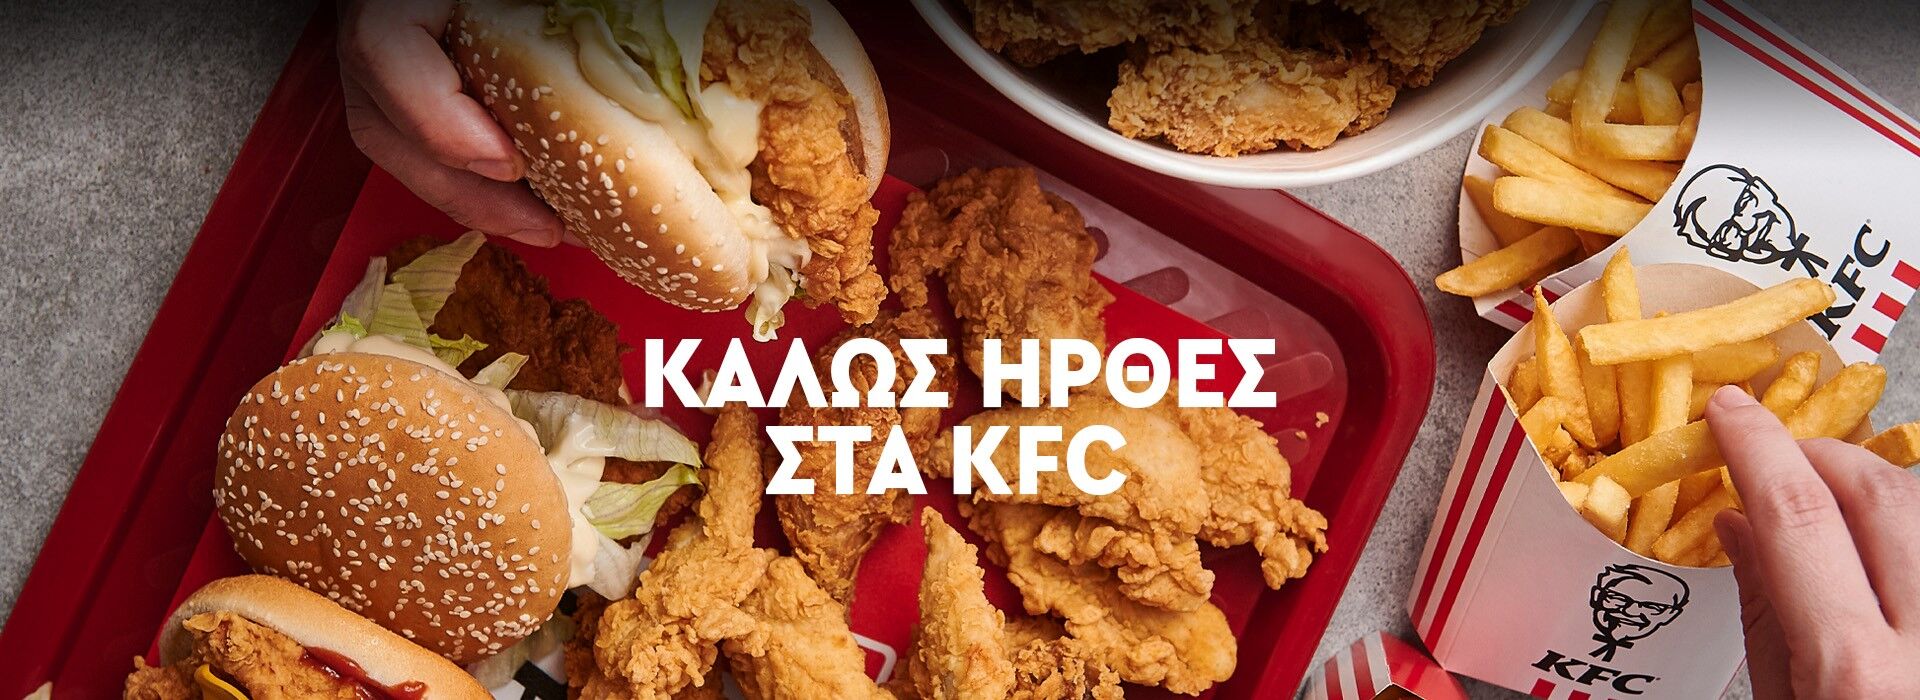 KFC.COM.CY